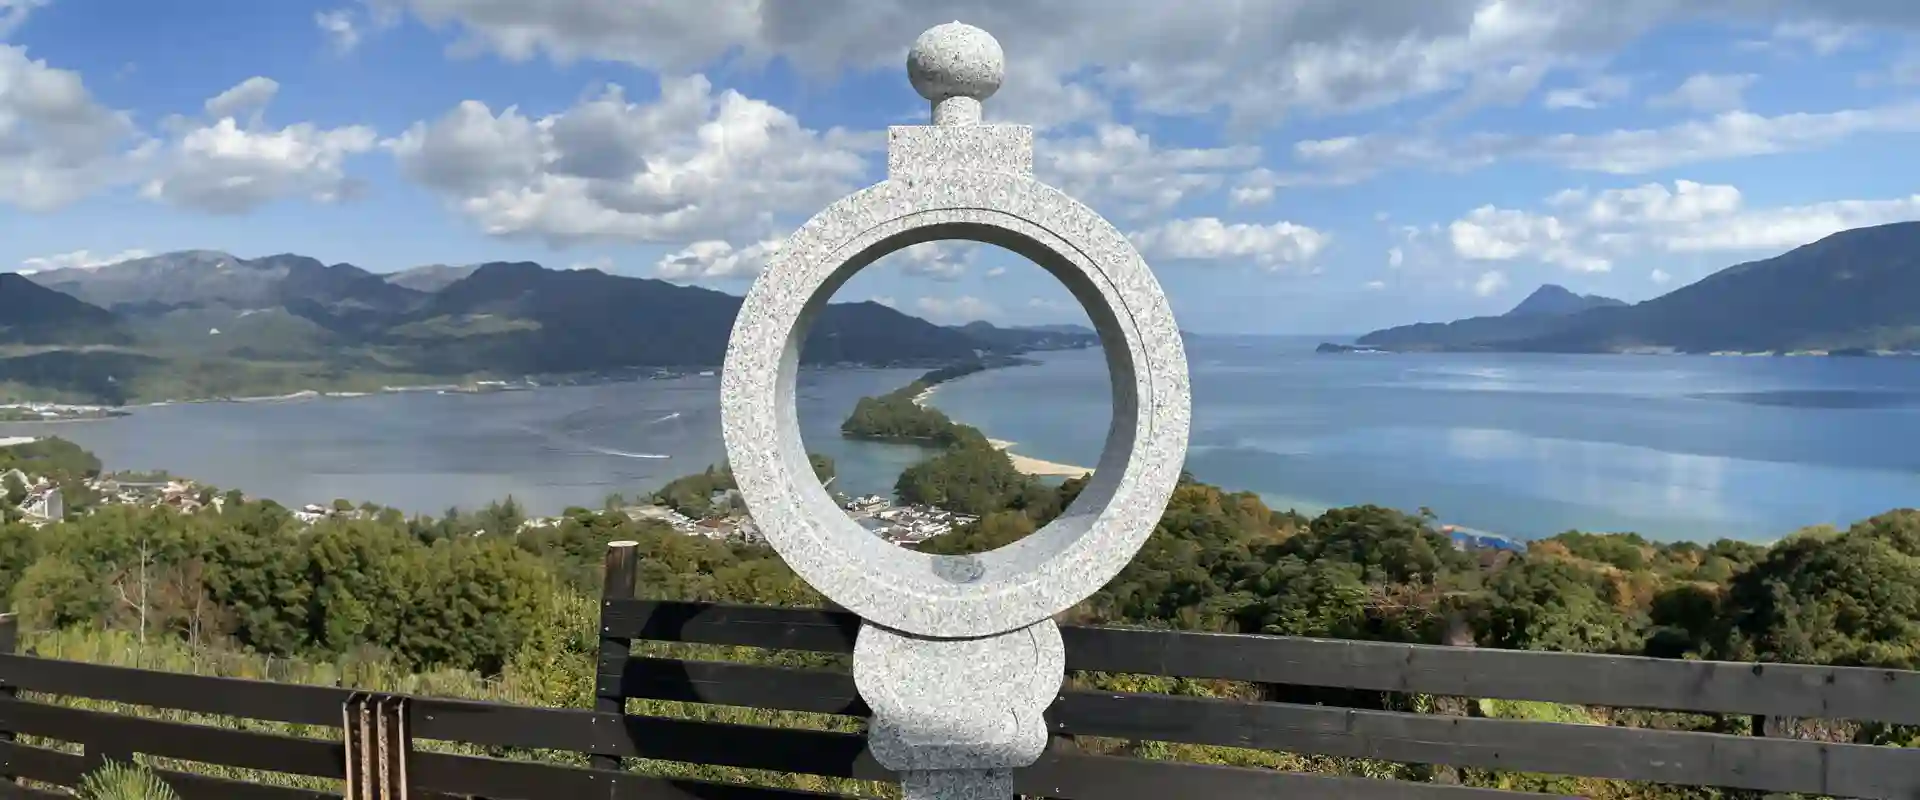 日本三景天橋立 知恵の輪の飛龍観